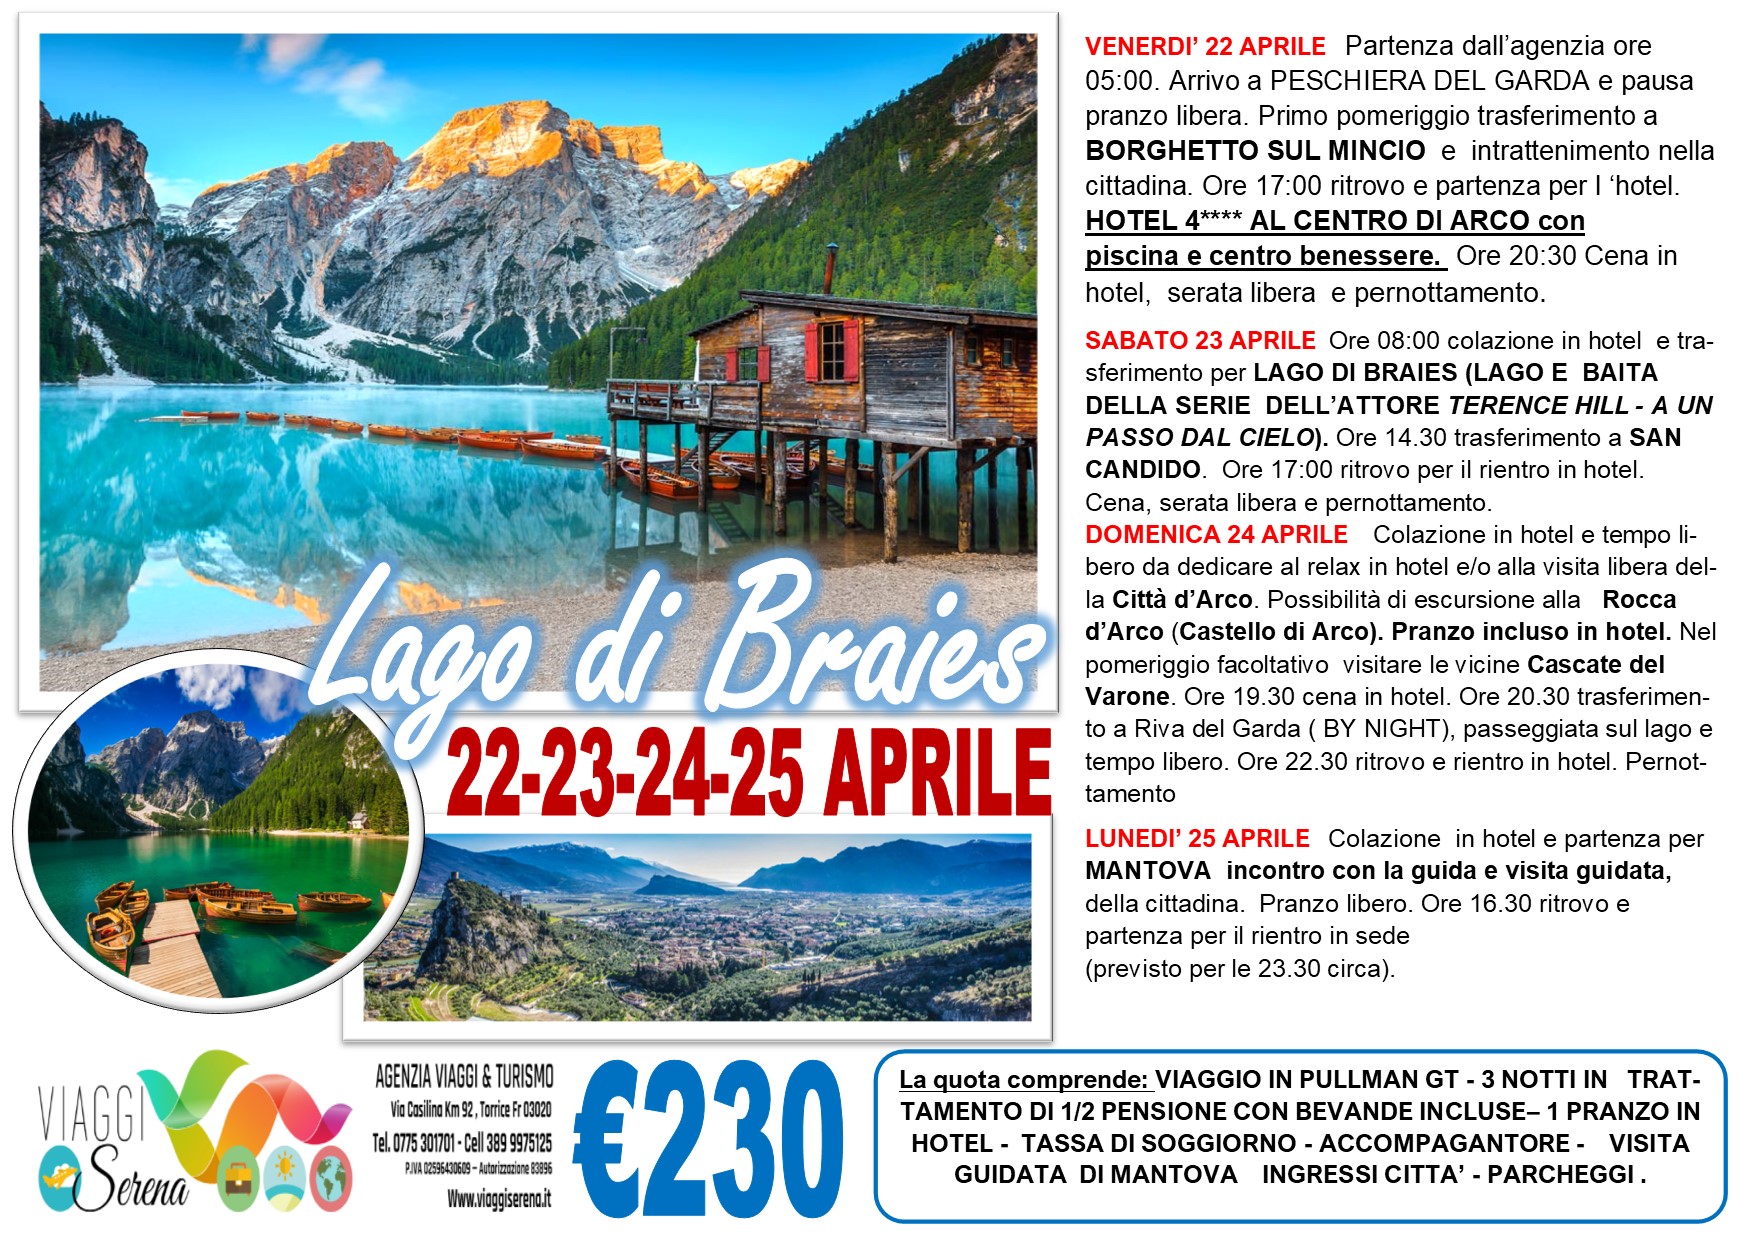 Viaggi di Gruppo: Lago di BRAIES, Borghetto sul Mincio, Mantova 22-23-24-25 Aprile €230,00